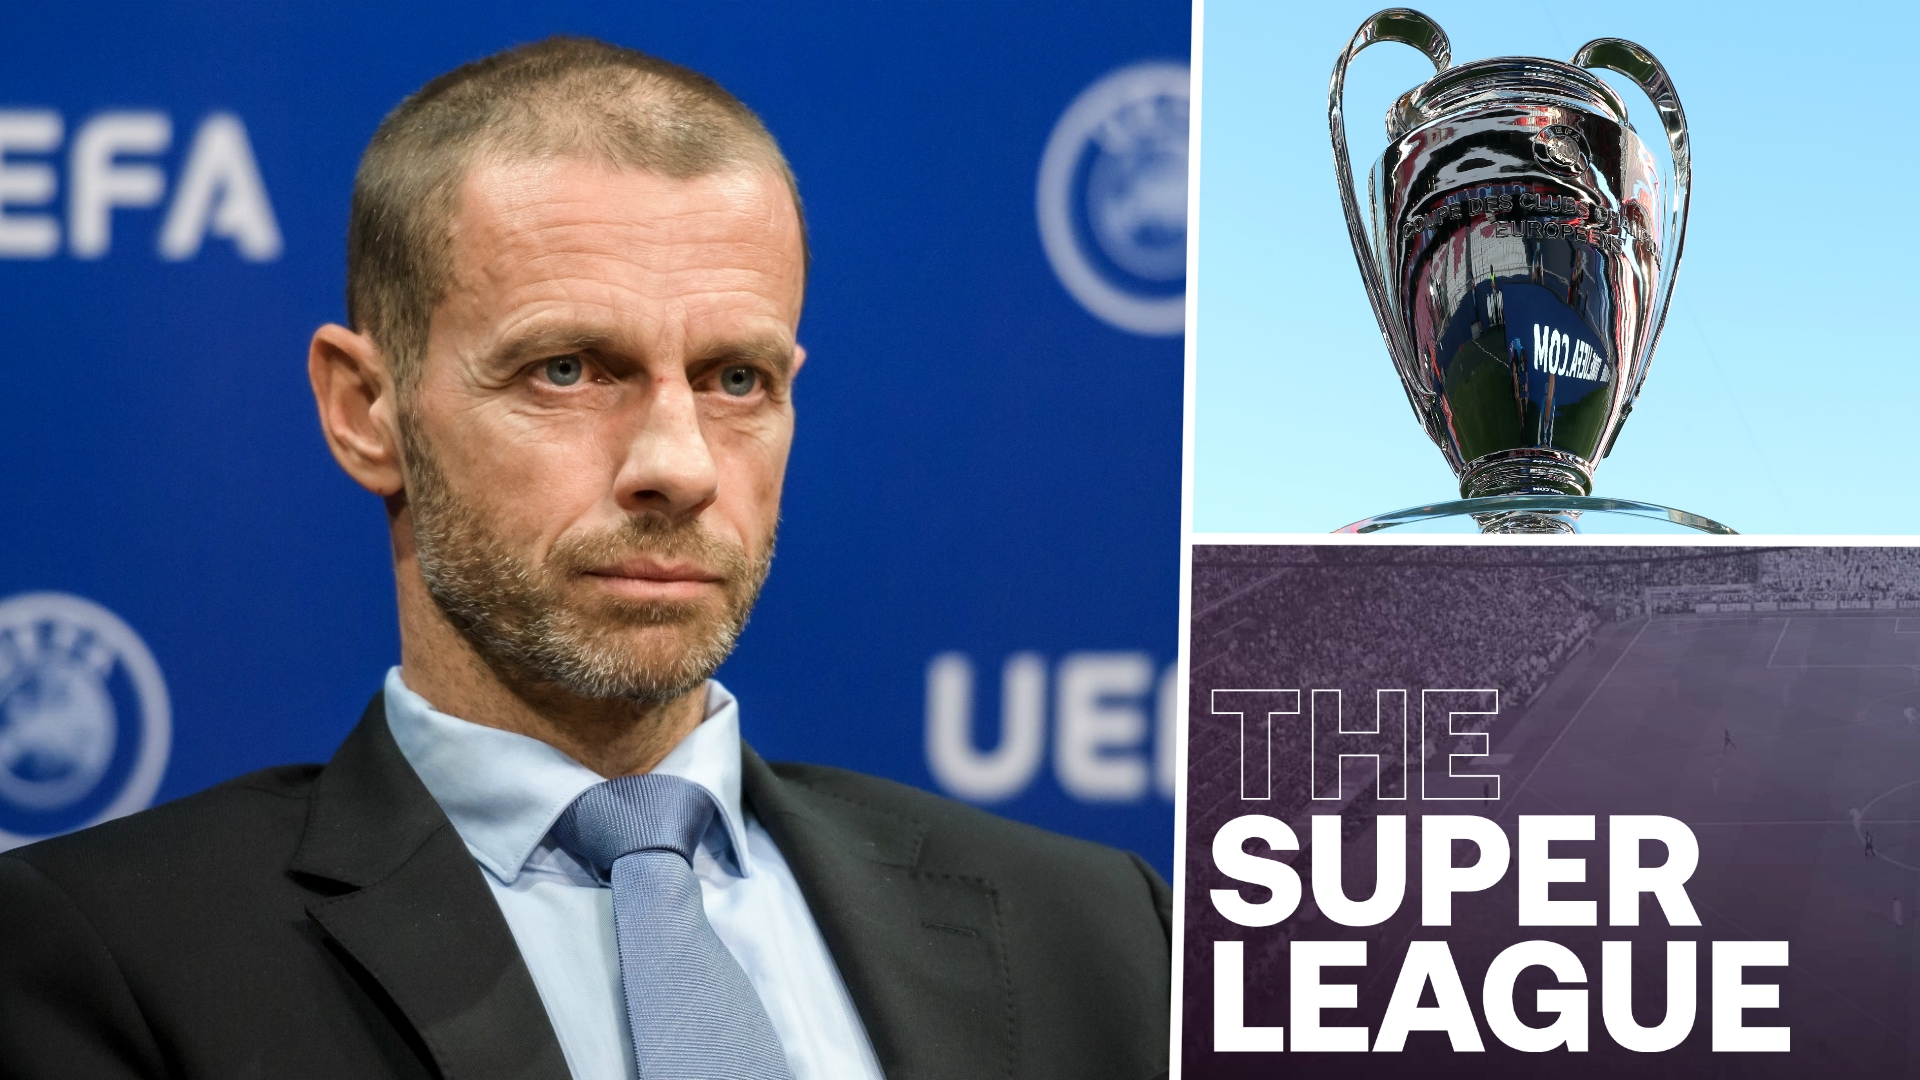 L'UEFA prononce ses sanctions contre les fondateurs de la Superleague